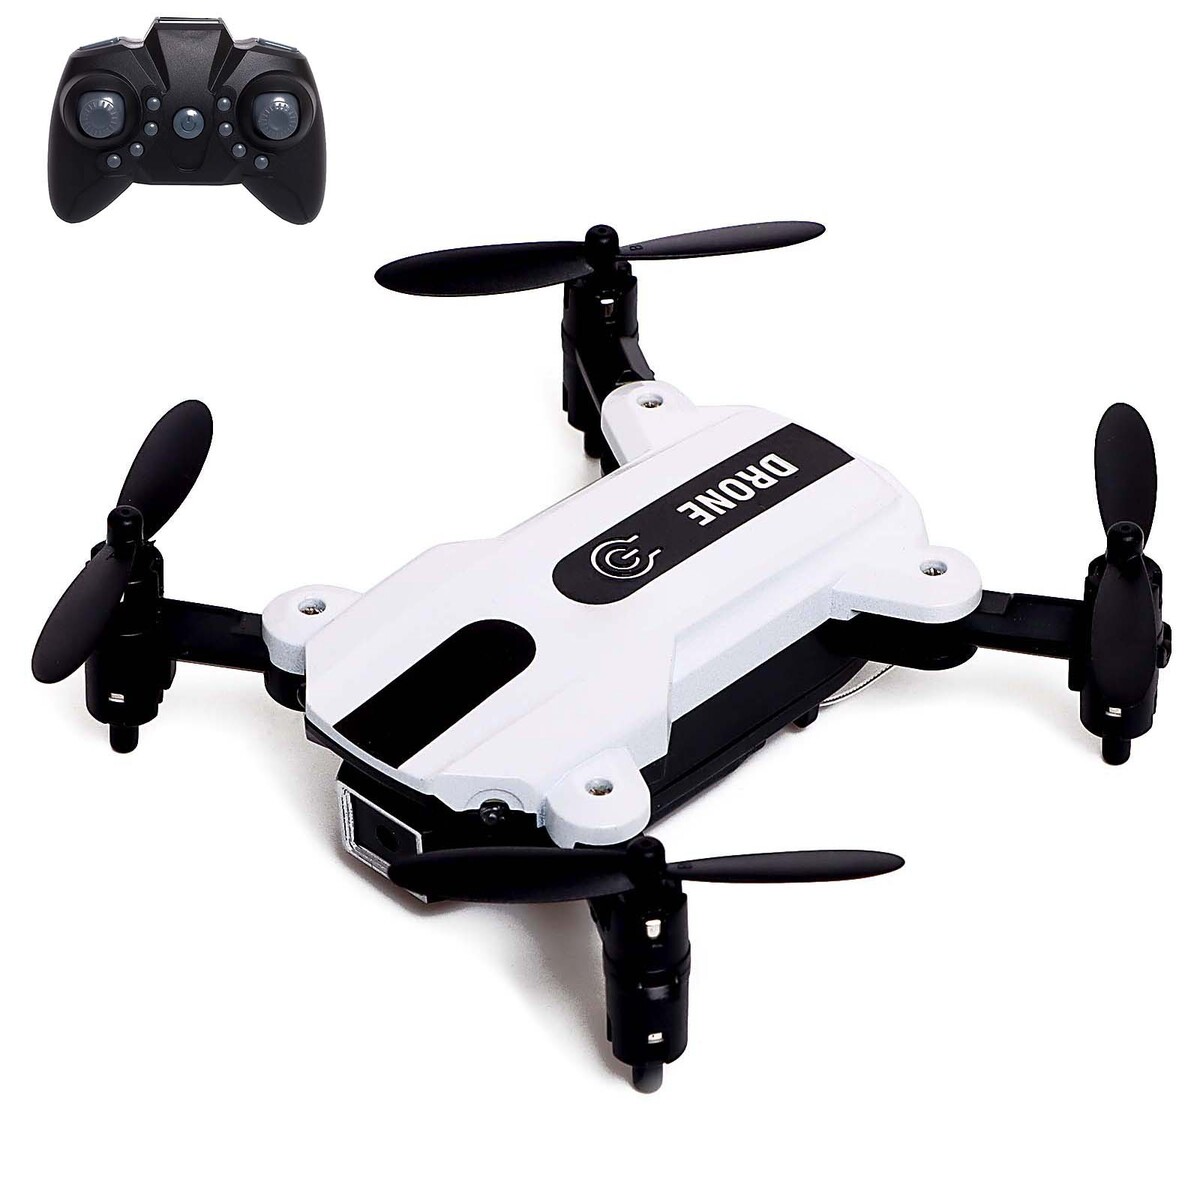  flash drone,  480p, wi-fi,  ,  